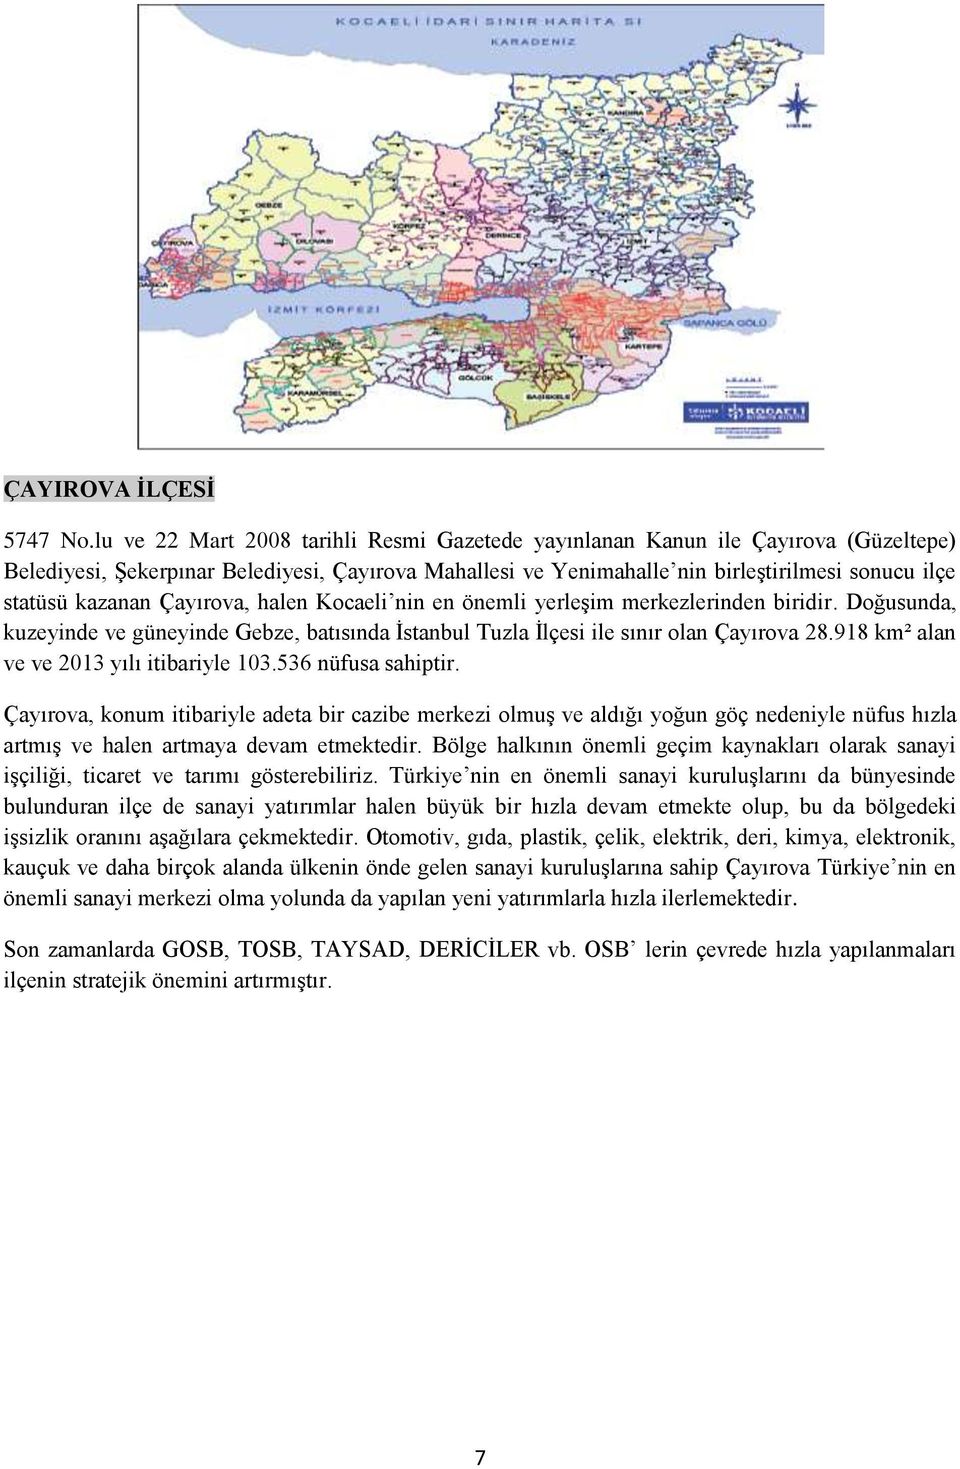 kazanan Çayırova, halen Kocaeli nin en önemli yerleşim merkezlerinden biridir. Doğusunda, kuzeyinde ve güneyinde Gebze, batısında İstanbul Tuzla İlçesi ile sınır olan Çayırova 28.